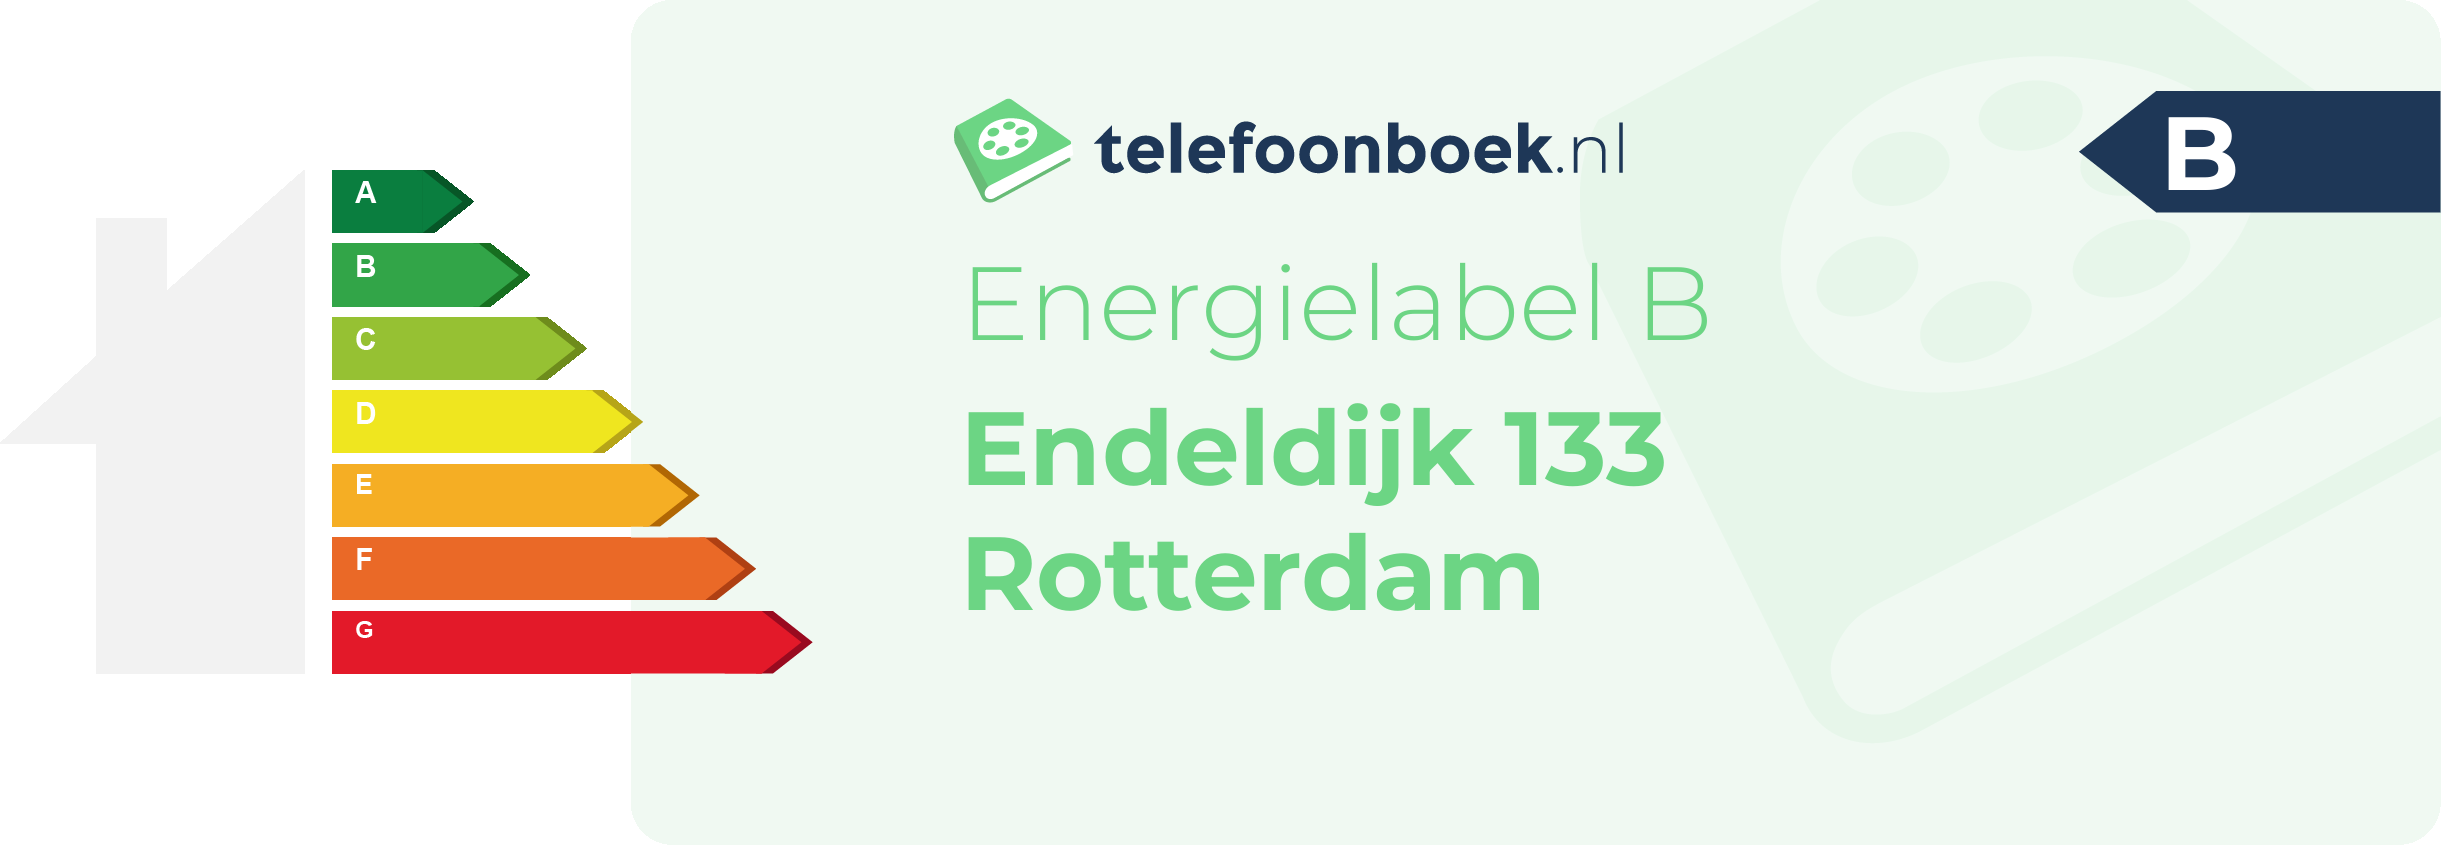 Energielabel Endeldijk 133 Rotterdam